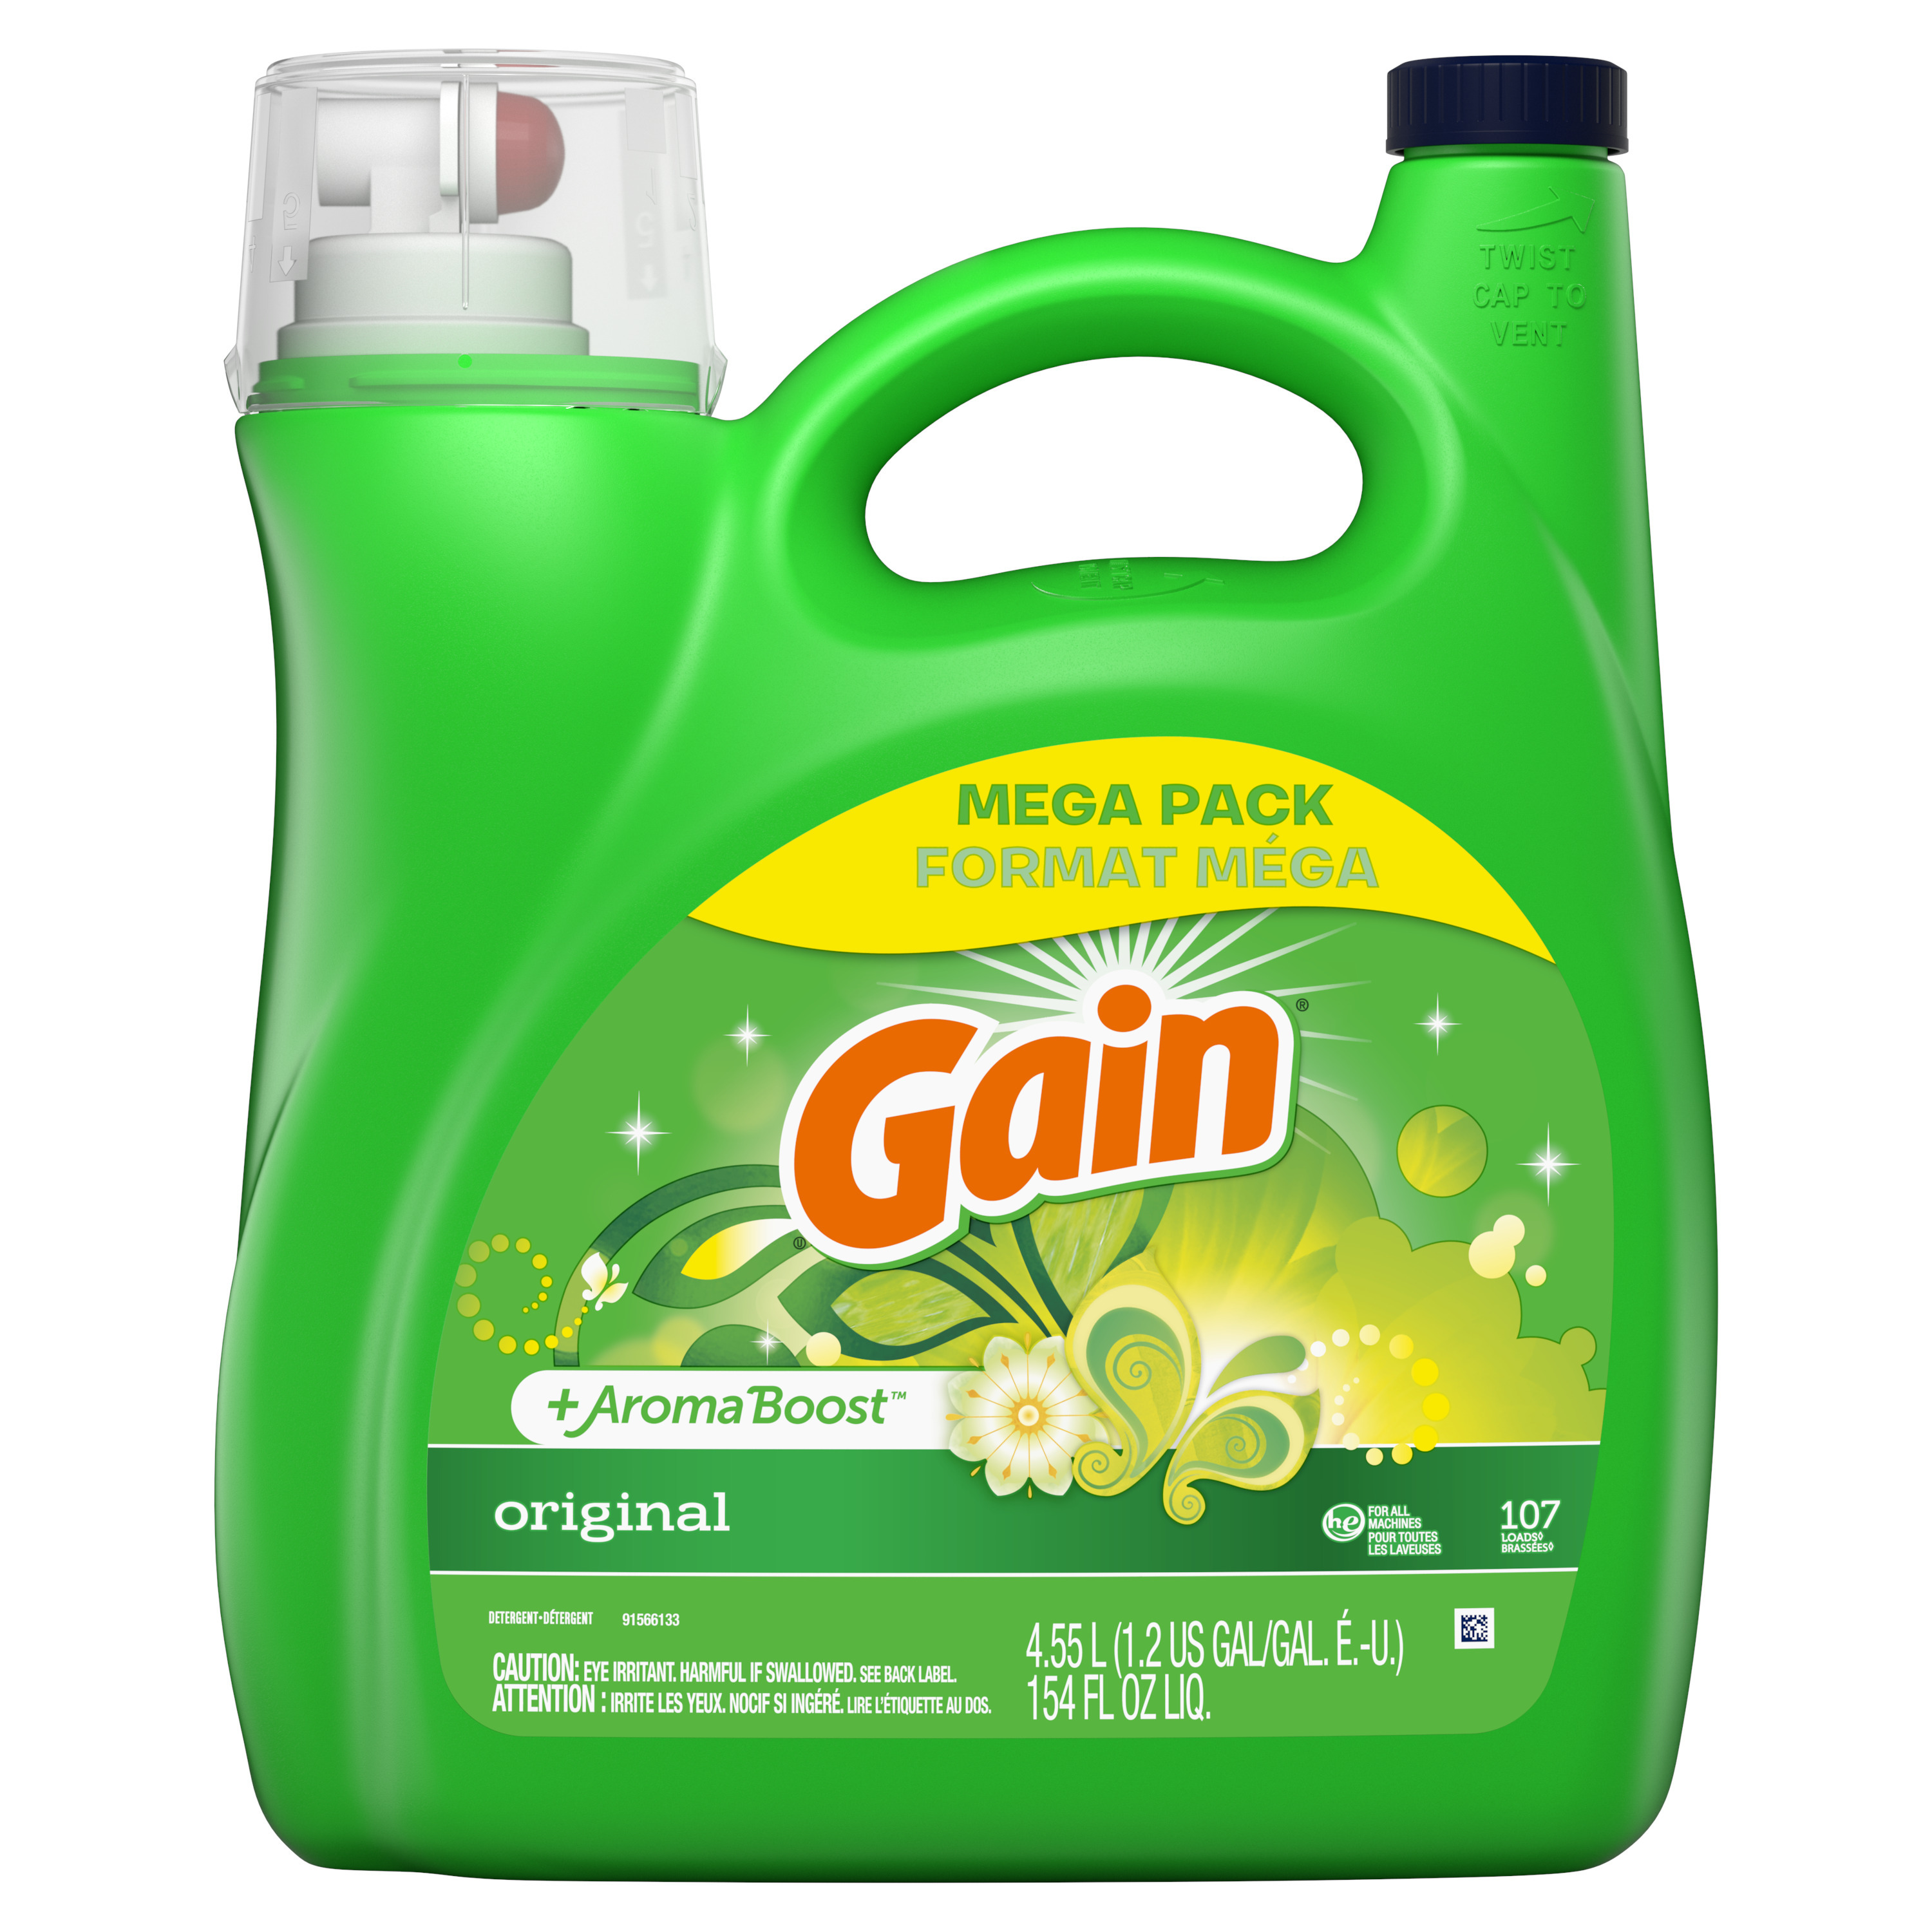 Gain + Aroma Boost Liquid Laundry Detergent, Original Scent, 107 Loads, 154 fl oz - image 8 of 9